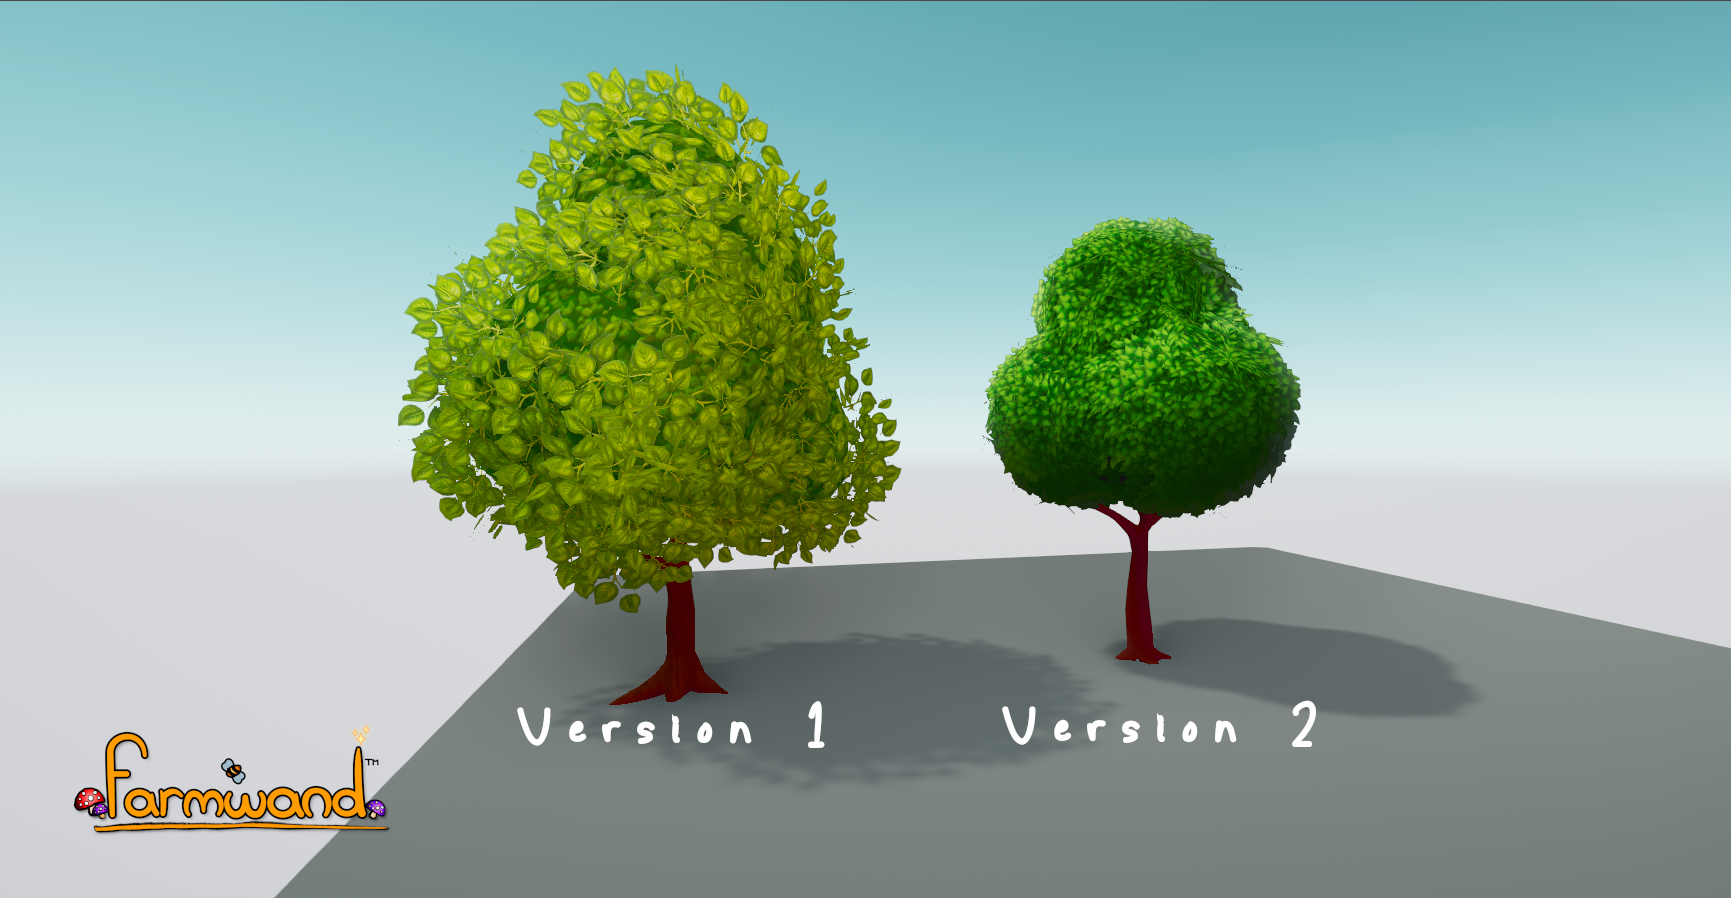 Tree comparison